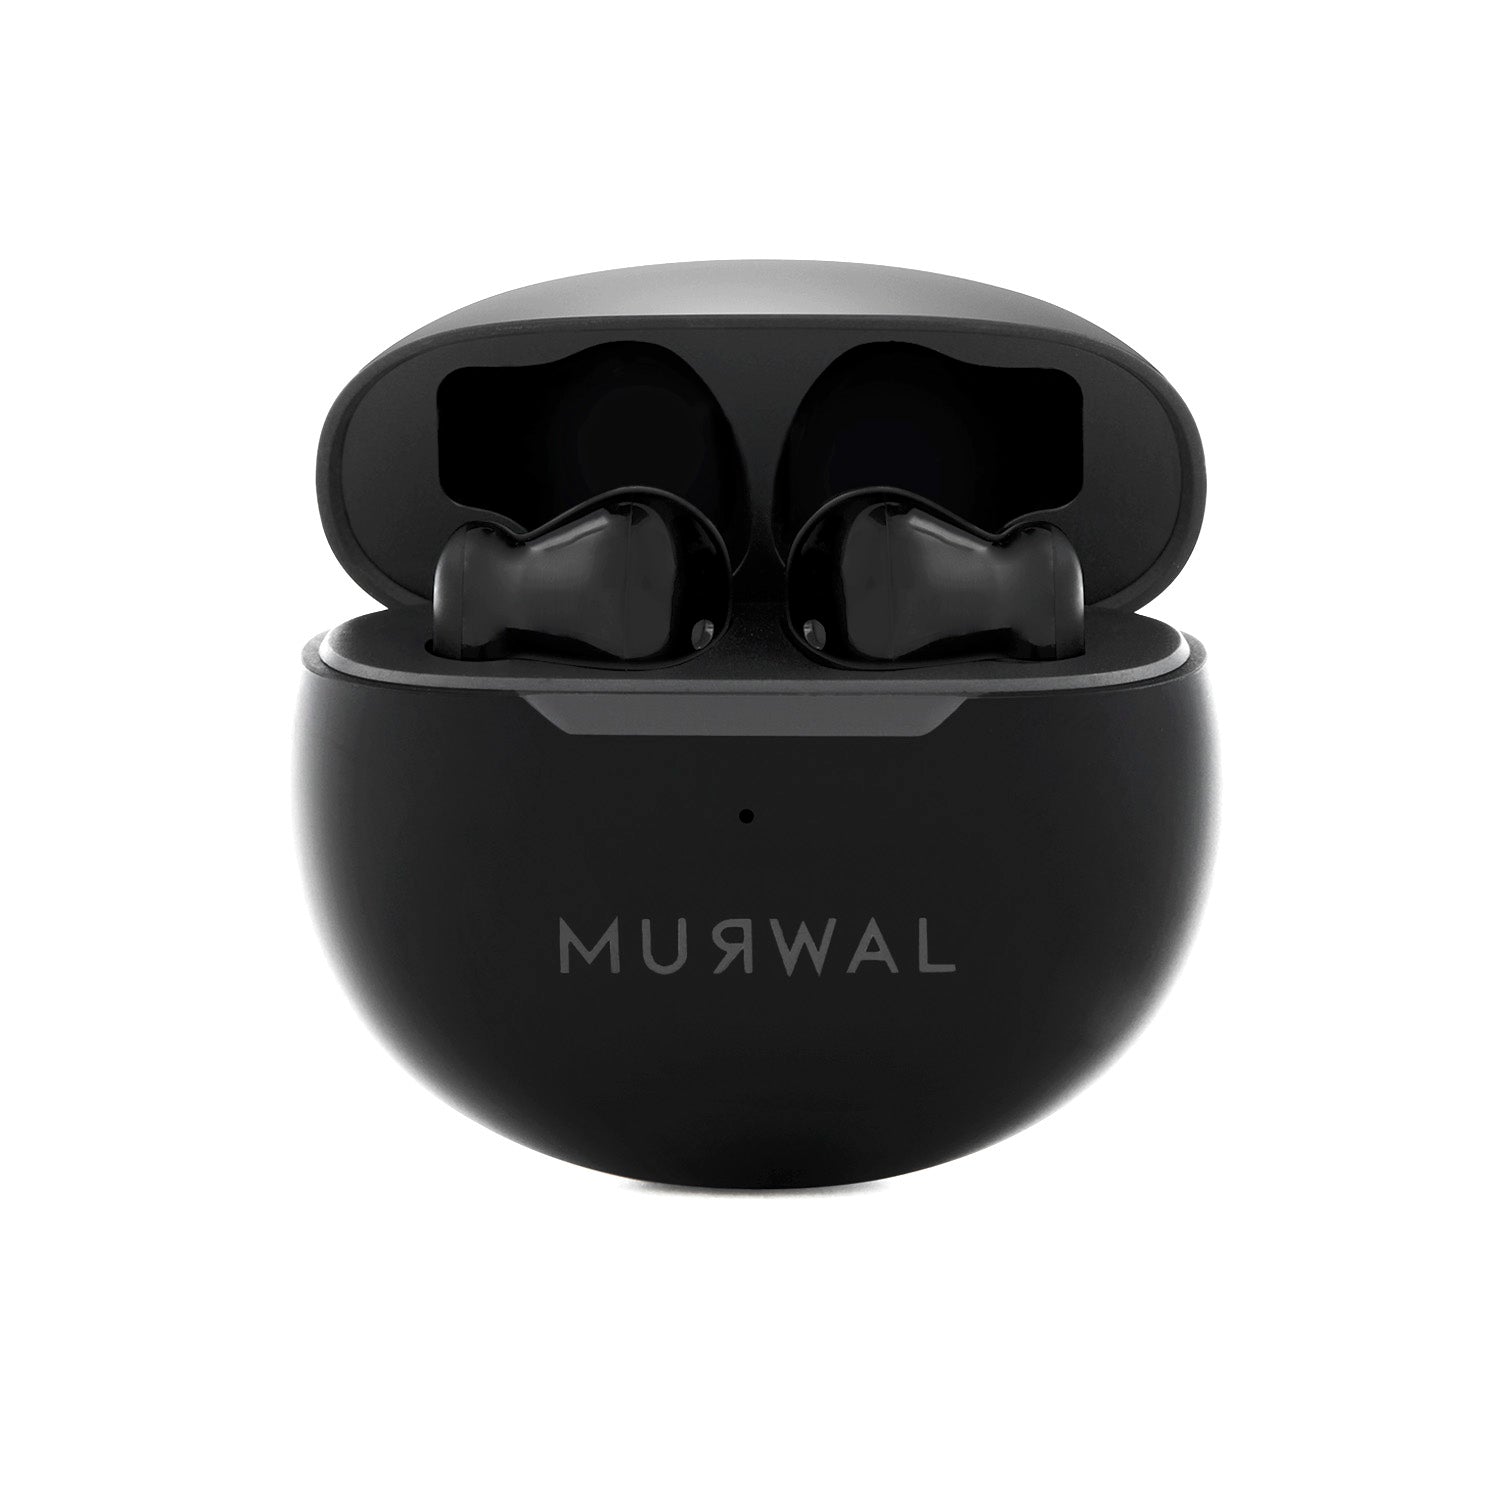 MURWAL GLOBE WHITE EDITION AURICULARES Bluetooth inalámbricos con microfono  20 Horas de reproducción, IPX5 Impermeable, reducción